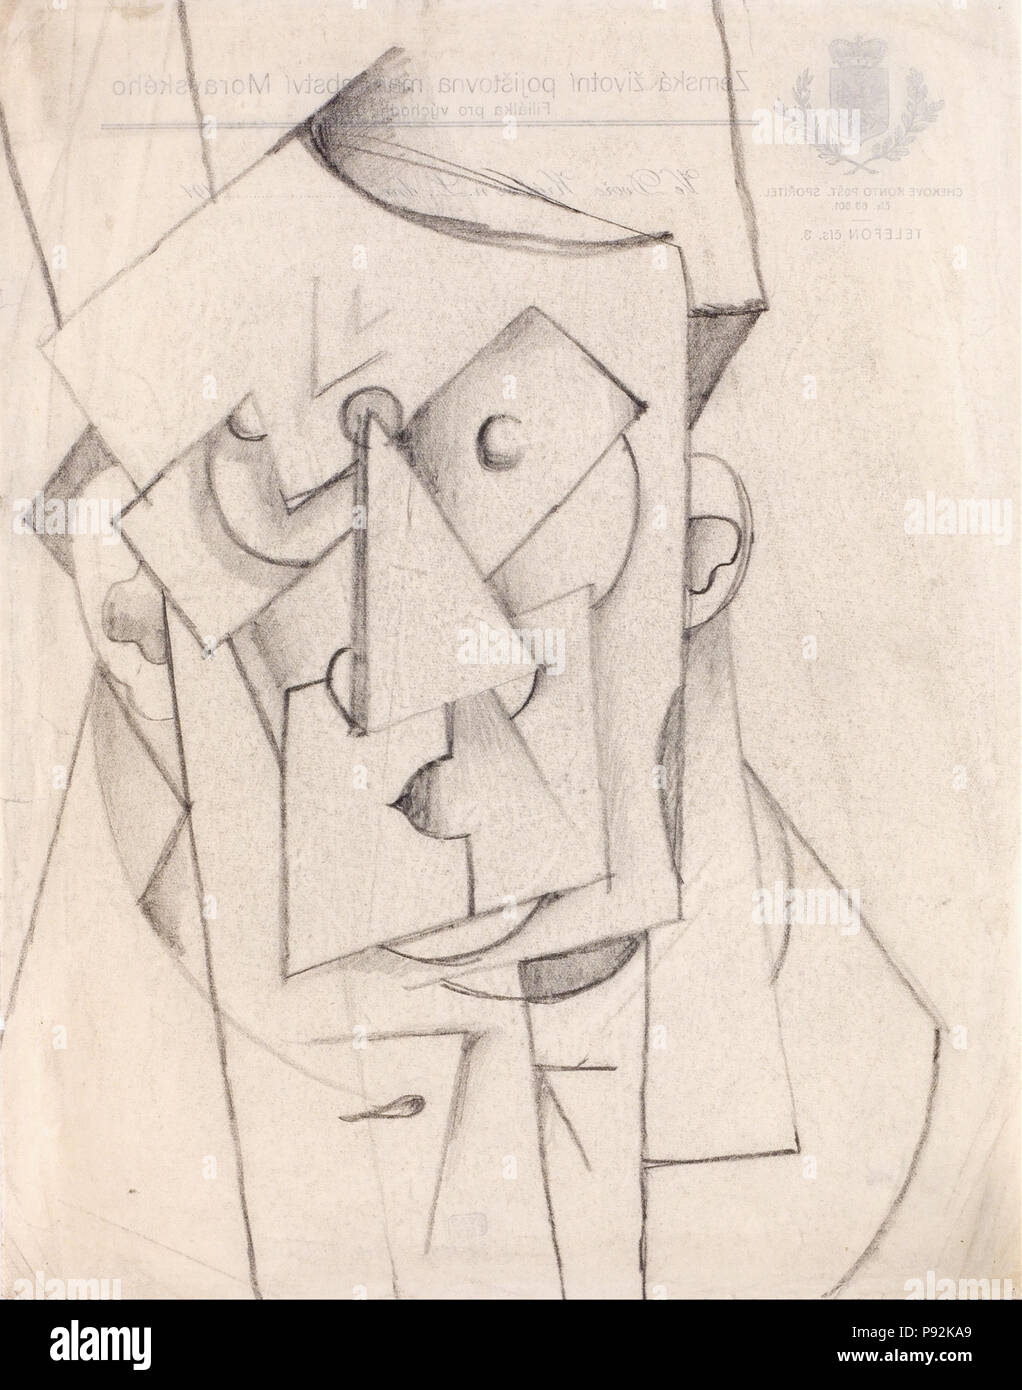 444 Otto Gutfreund - Cubist Composition – The Head - Stock Photo